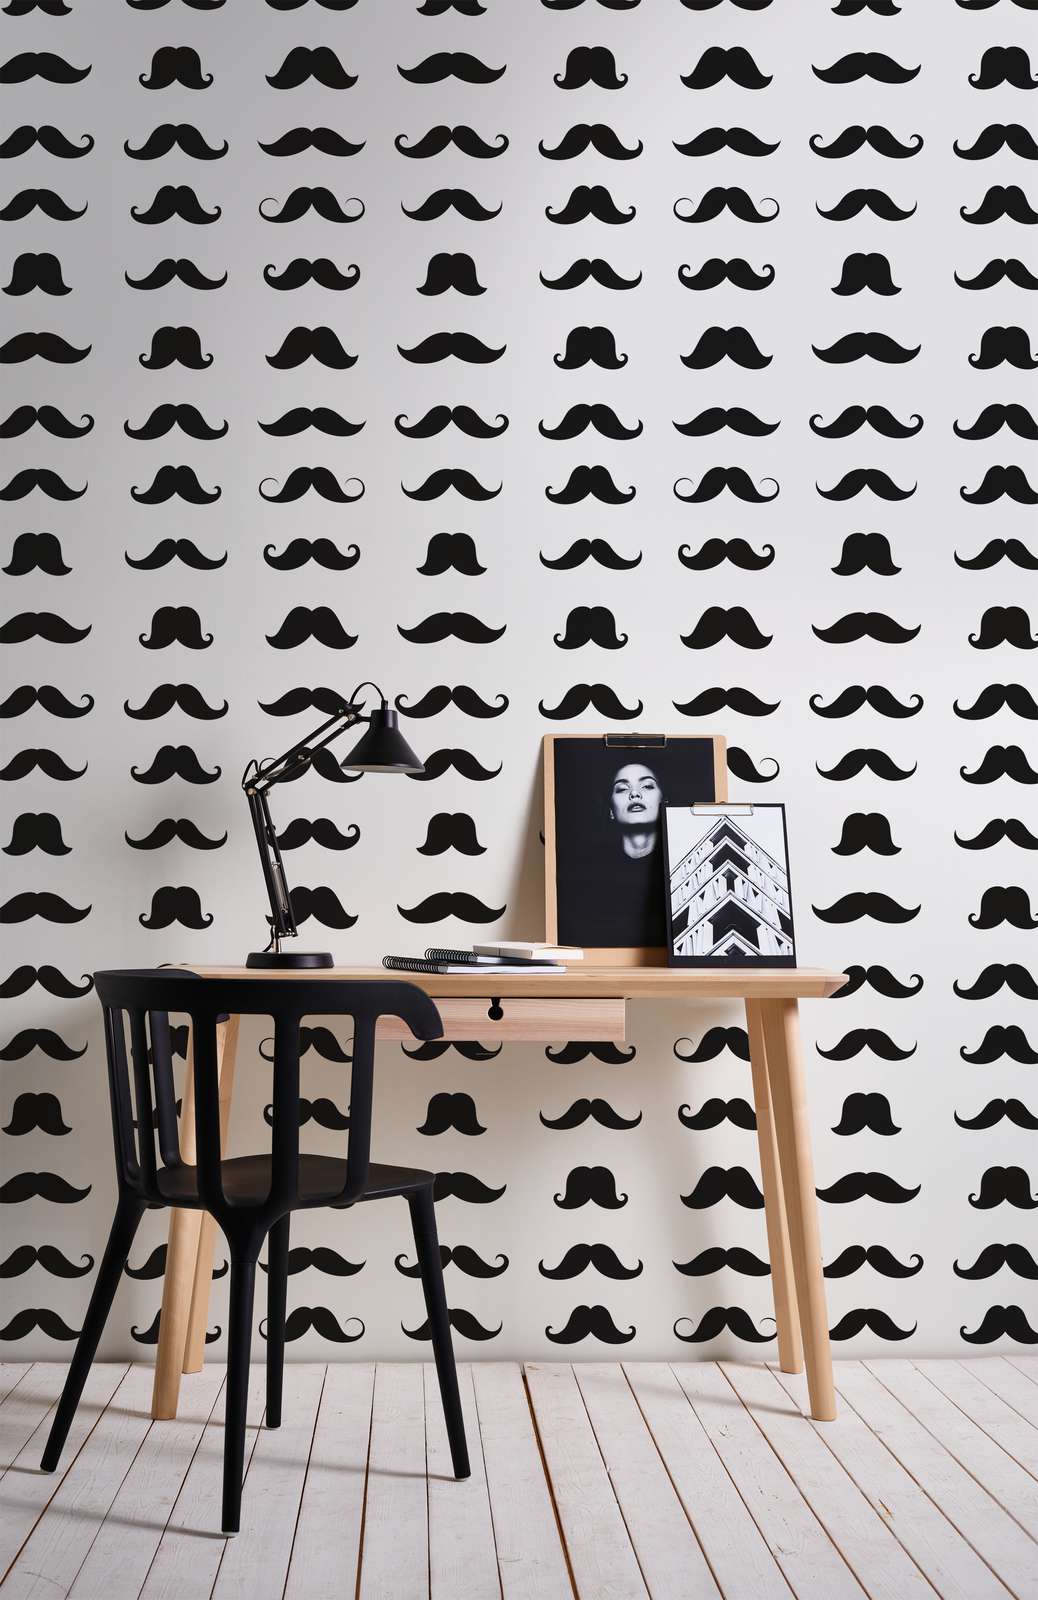             Fototapete Mustache cooles Schnäuzer Motiv – Schwarz-Weiß – Perlmutt Glattvlies
        